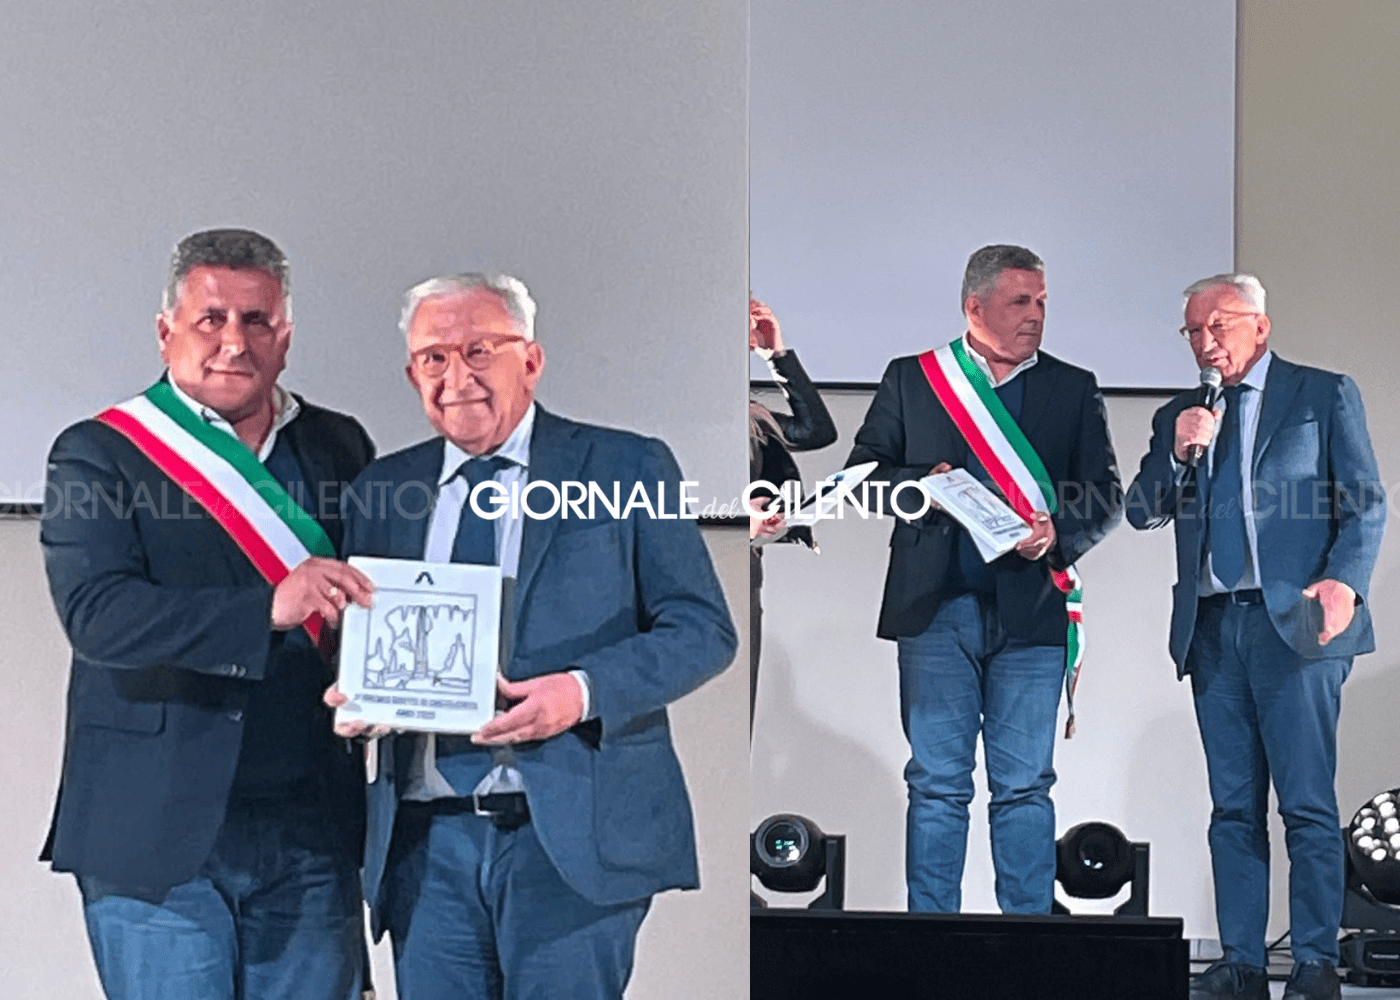 Il direttore della Bcc Monte Pruno premiato a Castelcivita come eccellenza del territorio